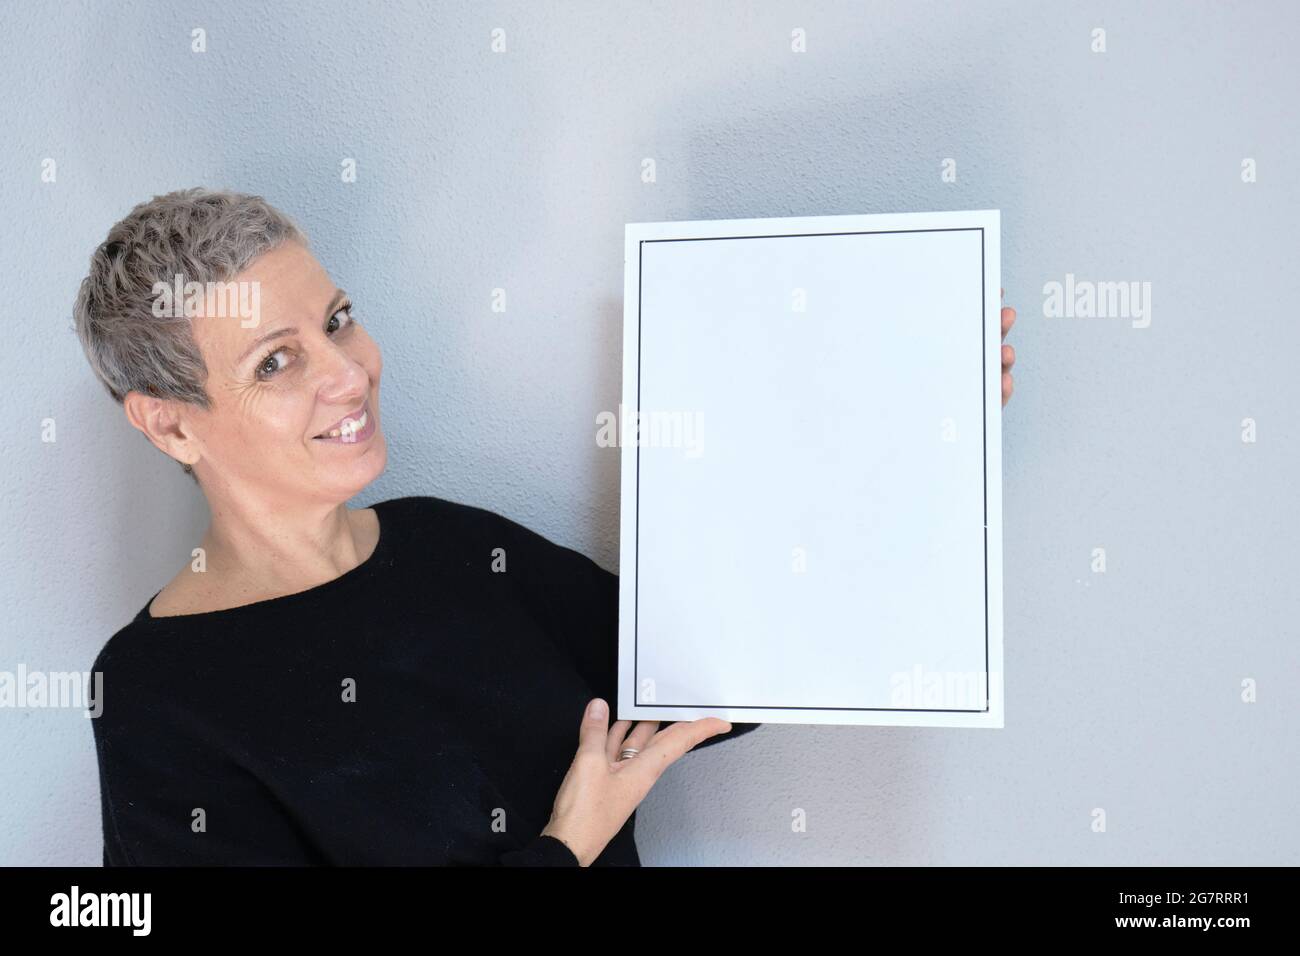 Retrato de primer plano de una mujer blanca adulta sonriente y atractiva con pelo gris mirando la cámara sosteniendo un marco vacío. Vista aislada sobre fondo gris Foto de stock